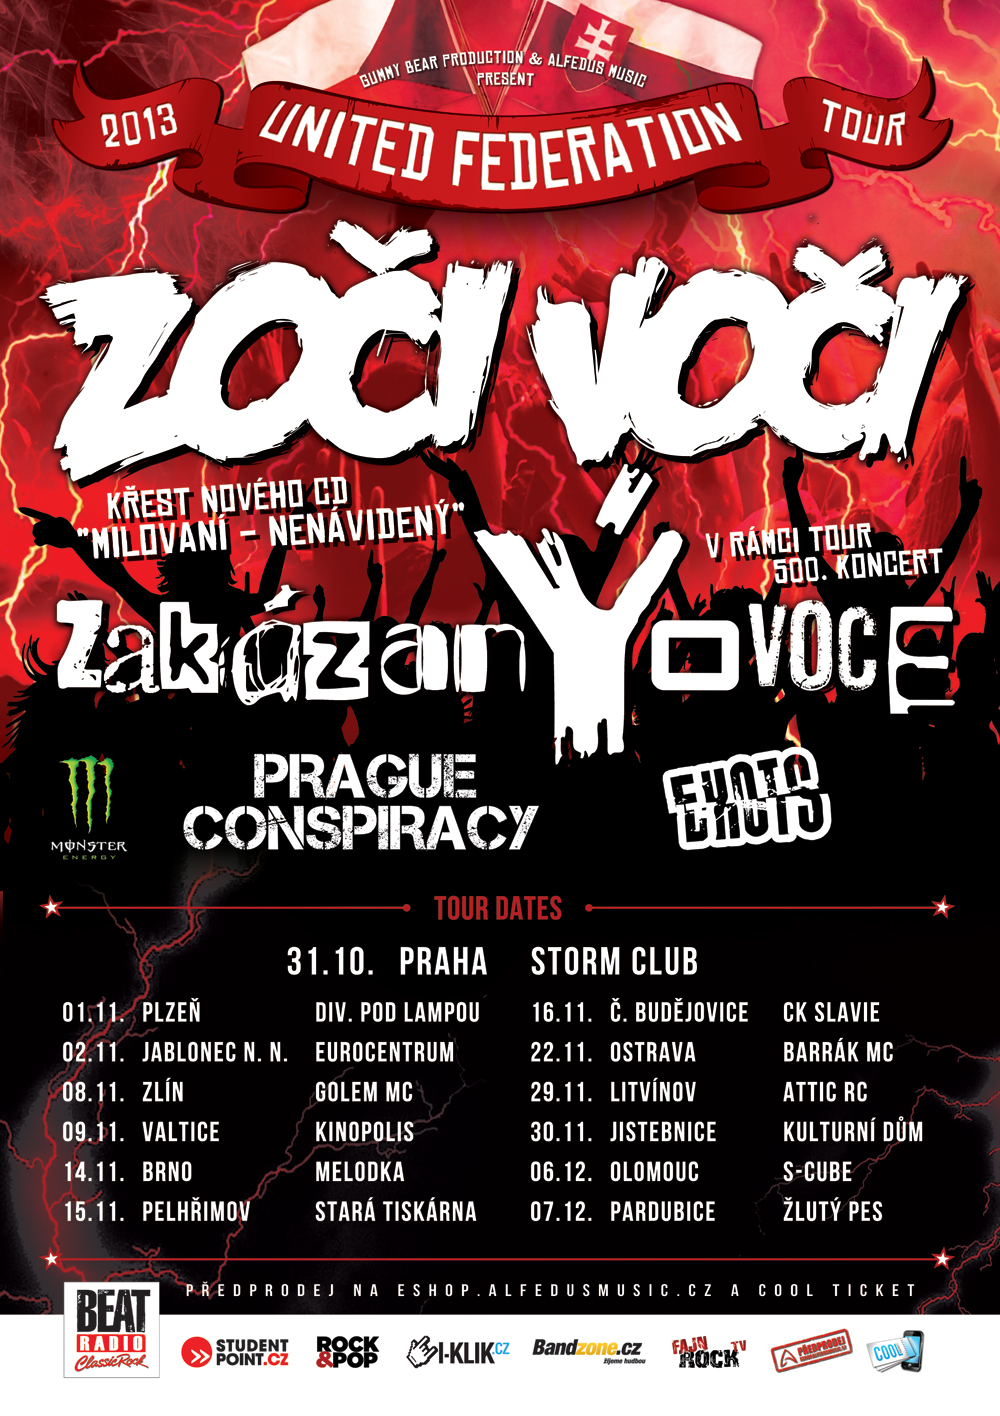 UNITED FEDERATION TOUR 2013: Zoči Voči a zakázanÝovoce na společném turné!